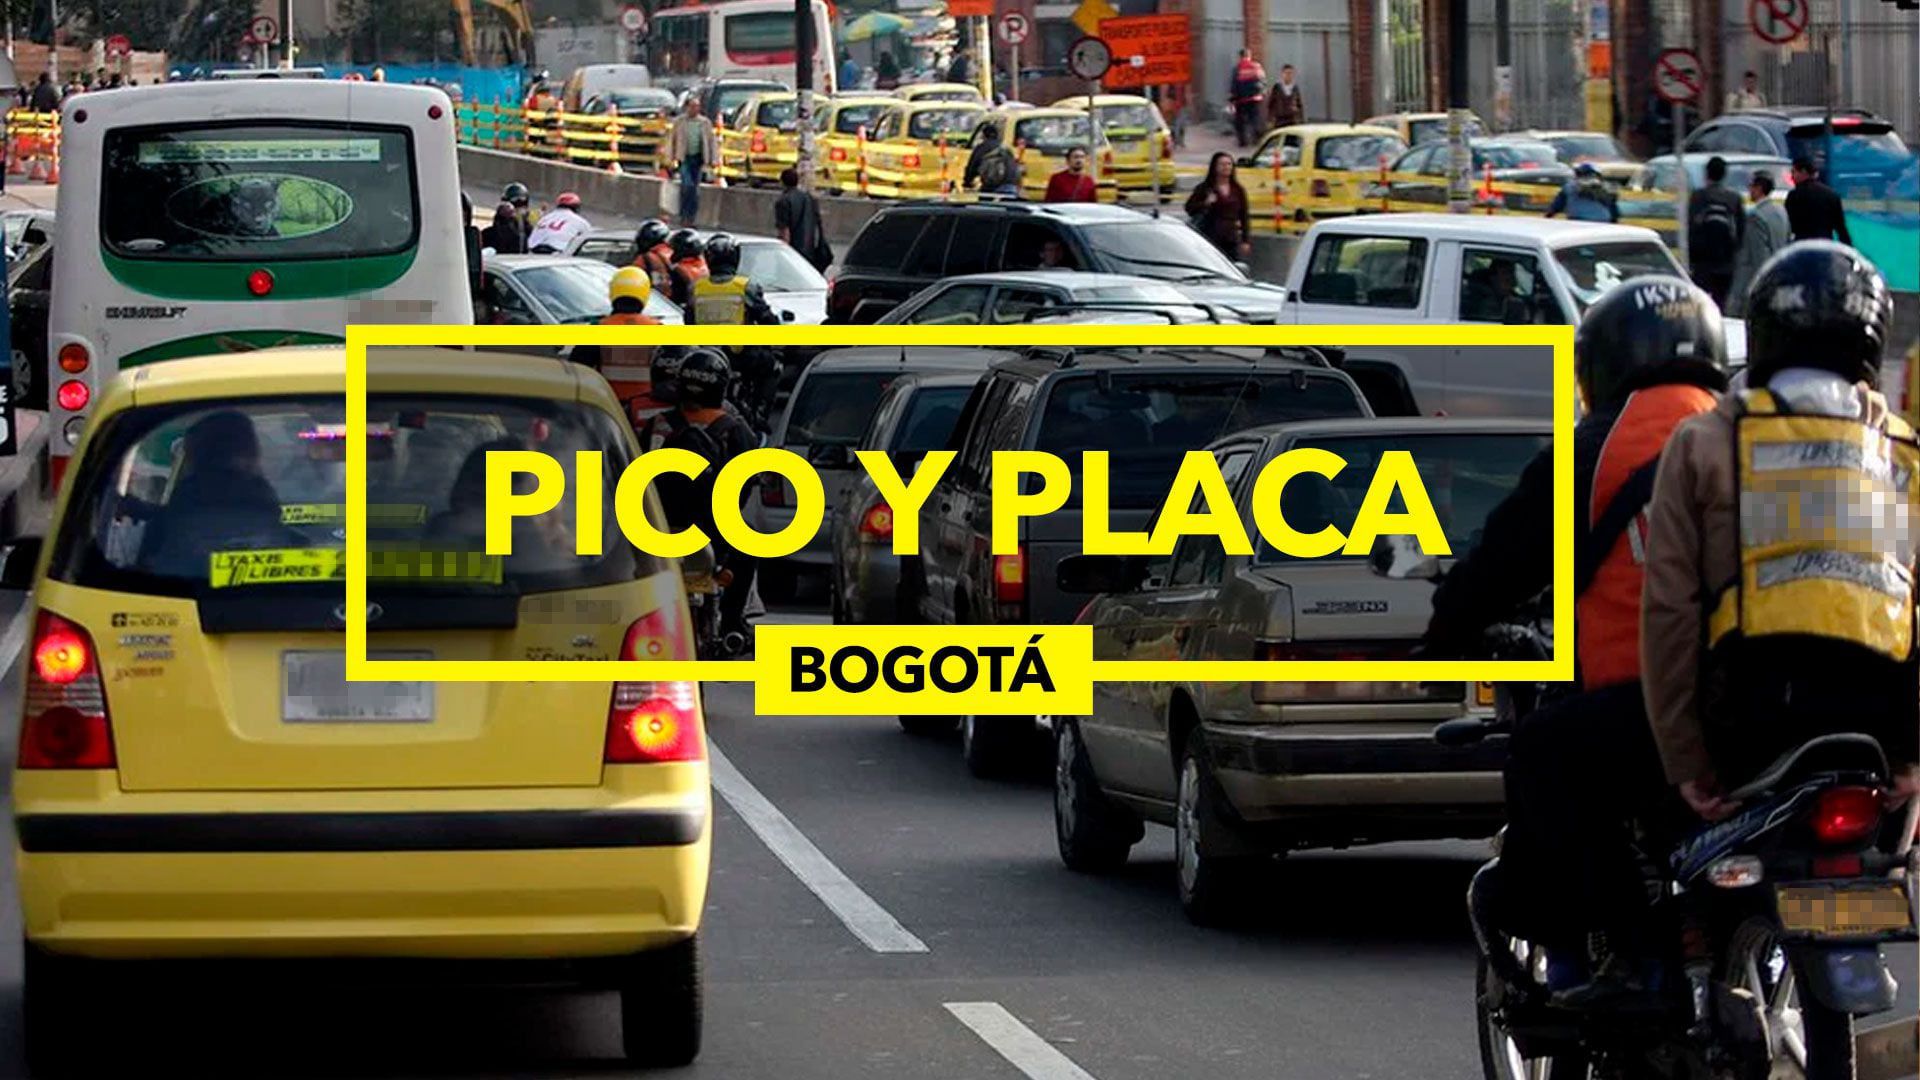 El Pico y Placa no aplica los domingos y en días fesitivos (Infobae)